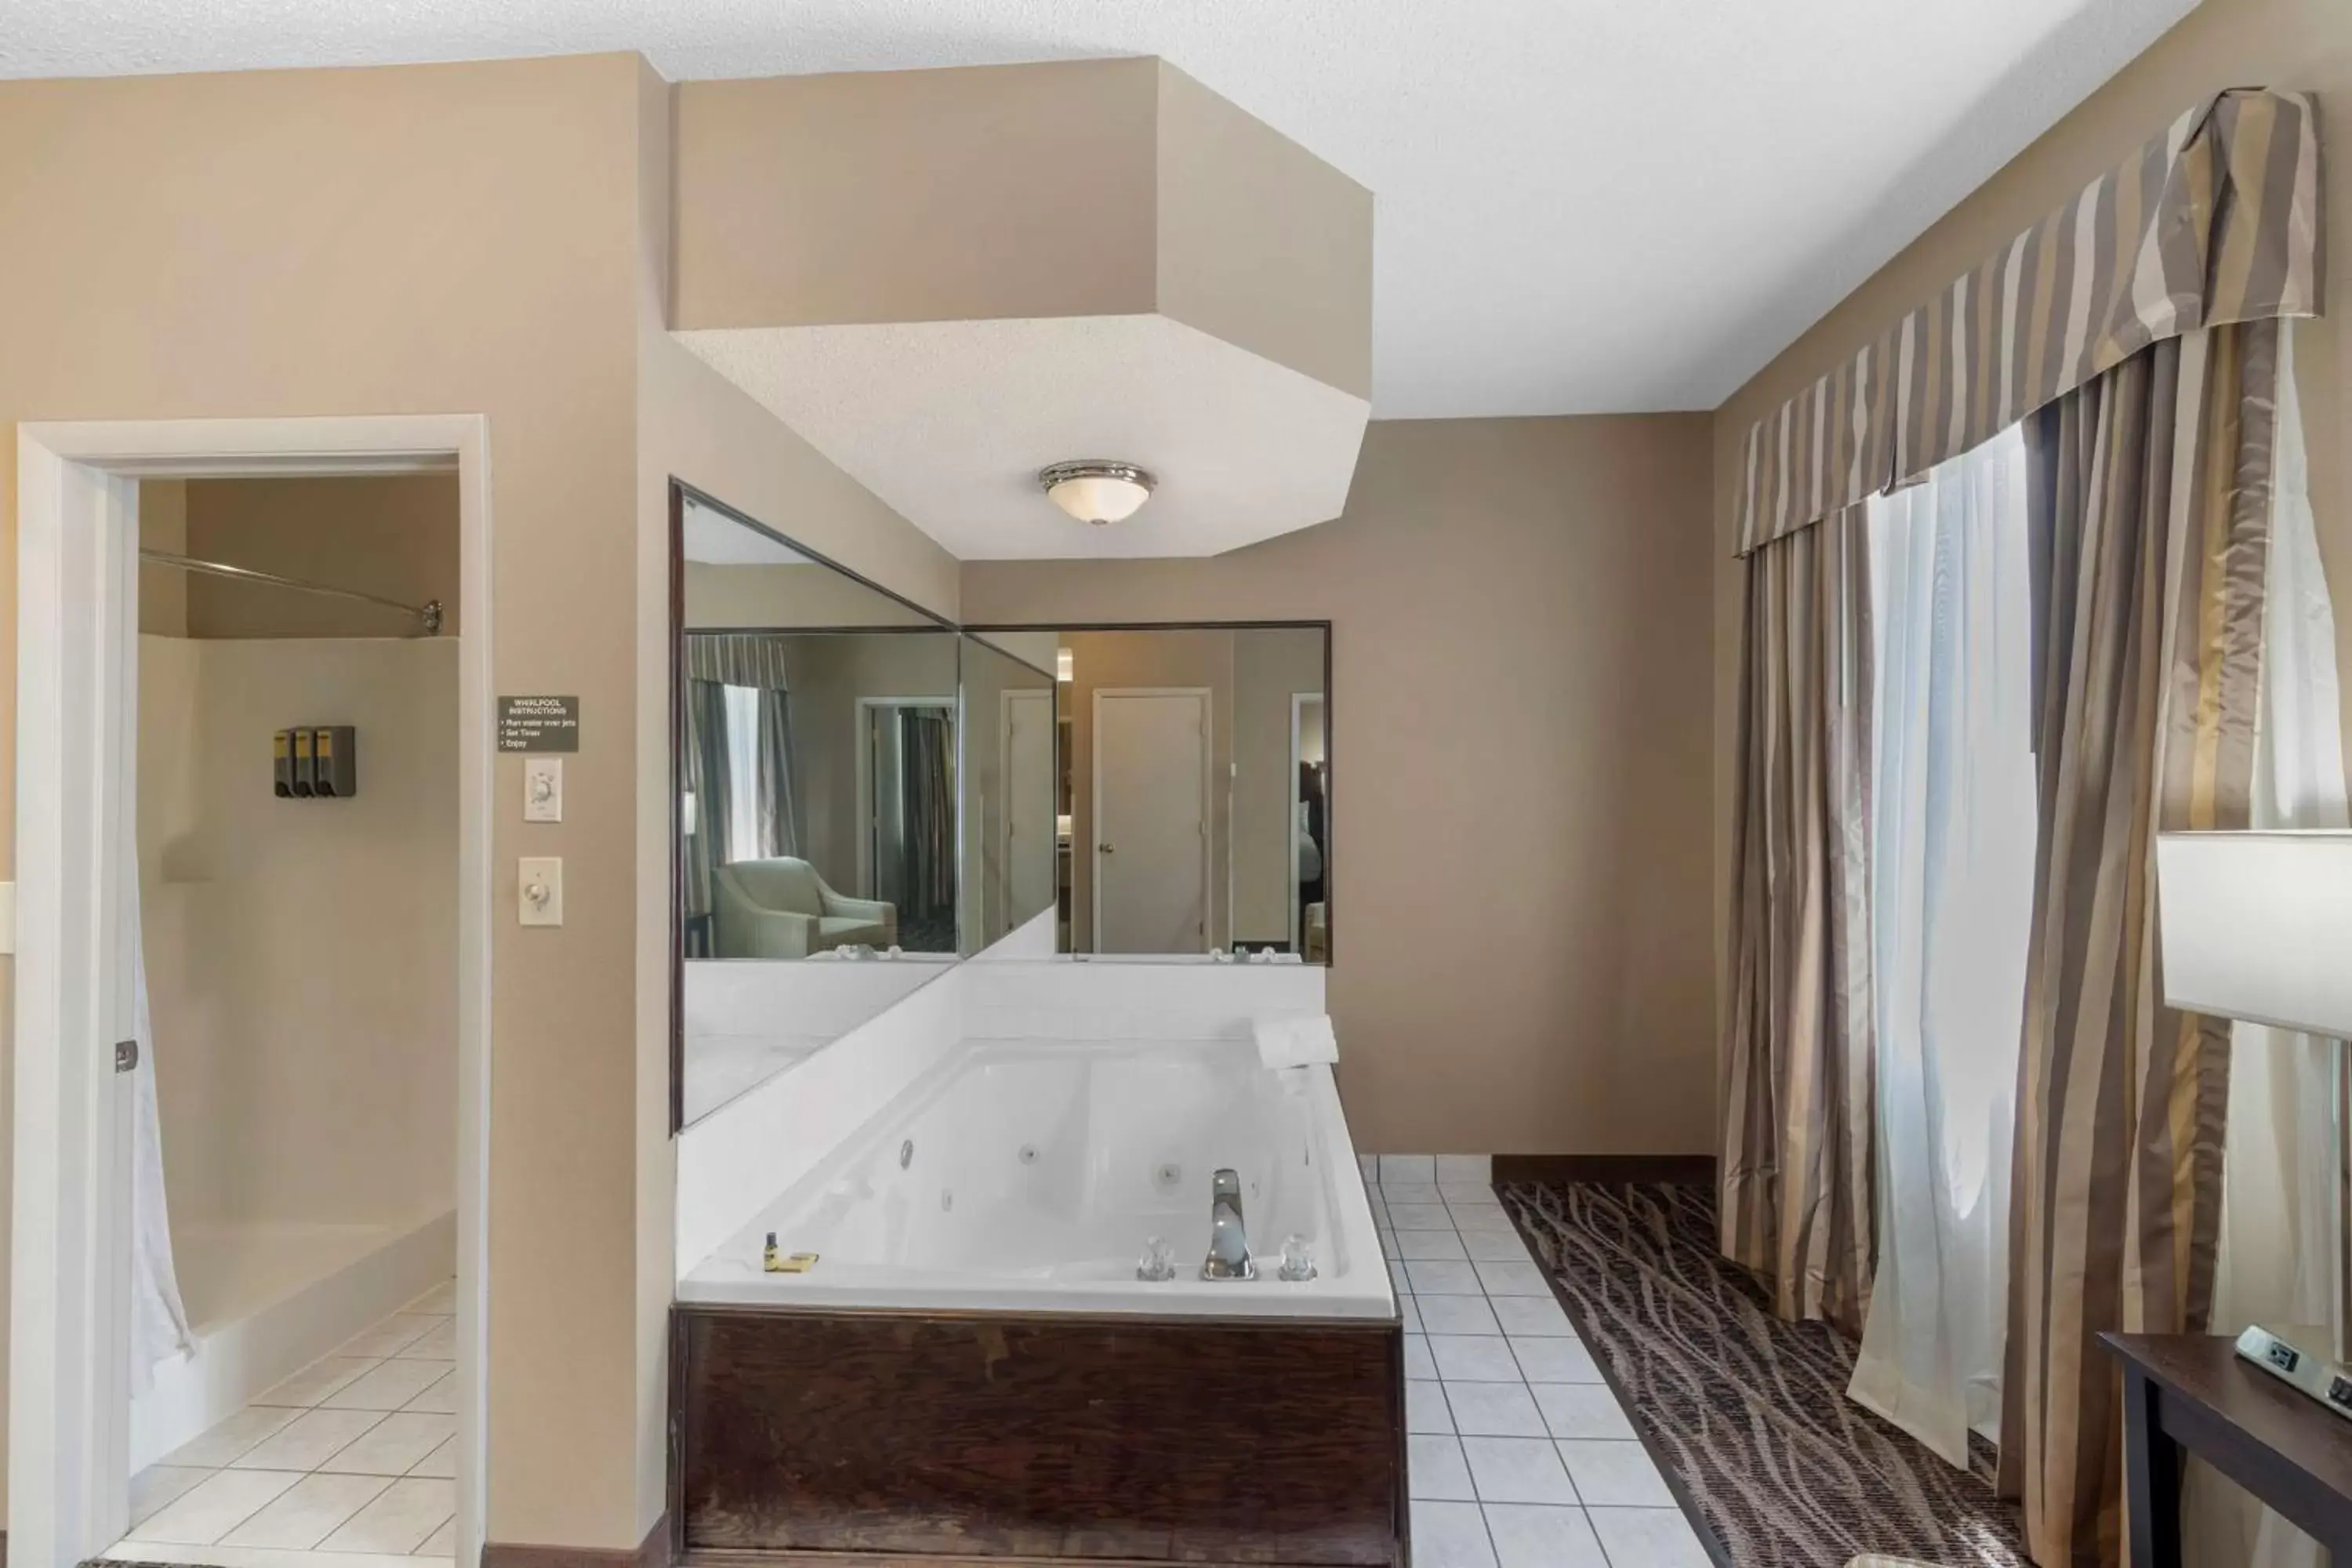 Bedroom, Bathroom in Best Western Plus Russellville Hotel & Suites